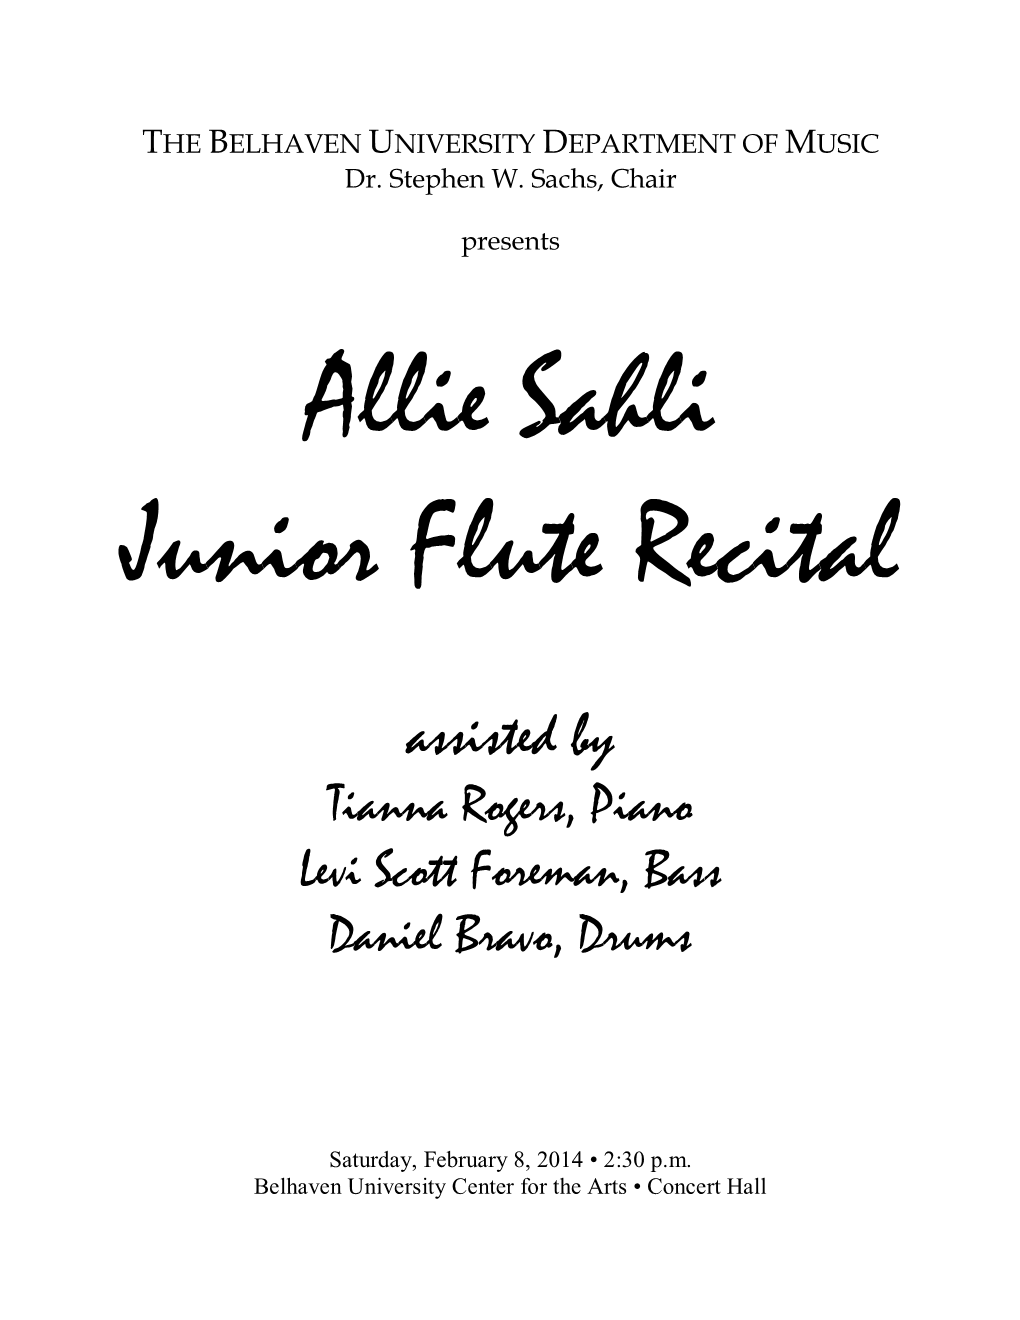 Allie Sahli Junior Flute Recital